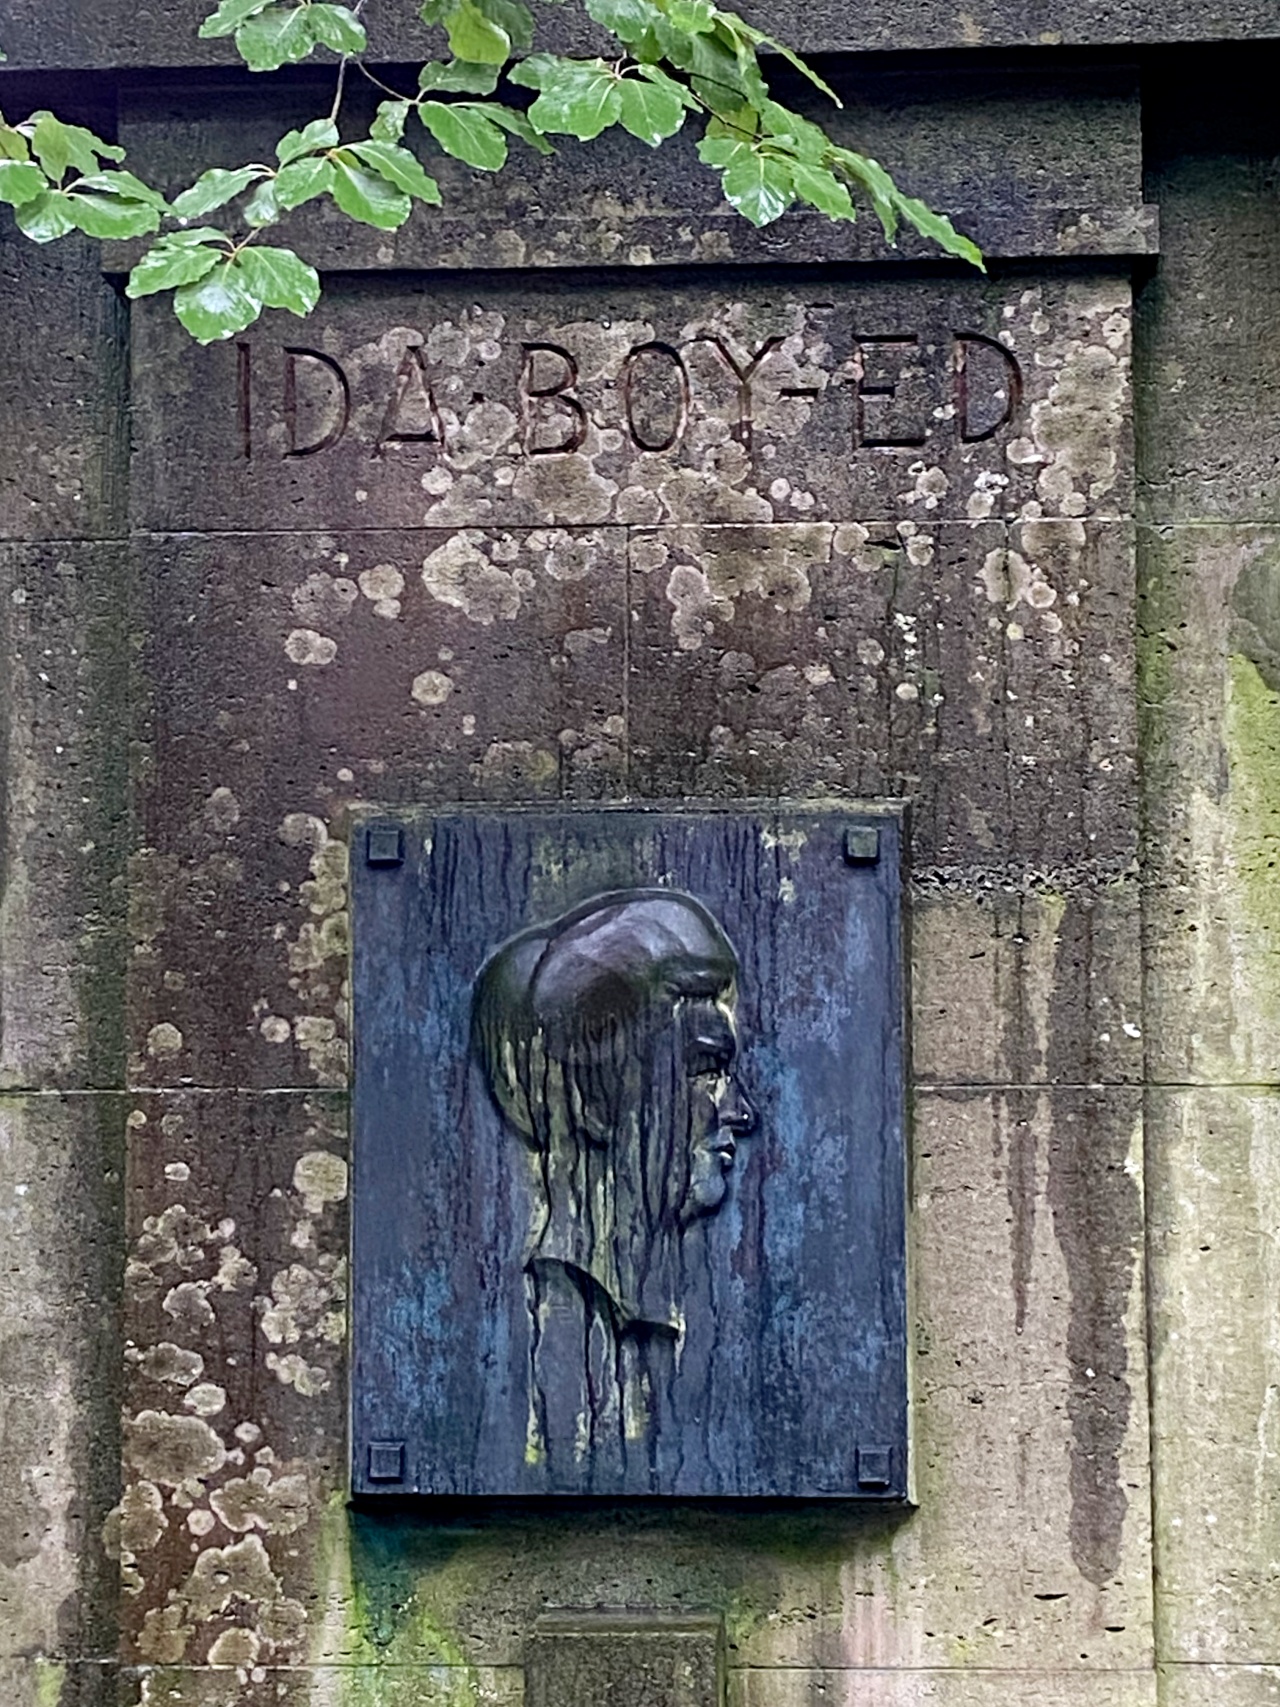 Der Grabstein für Ida Boy-Ed